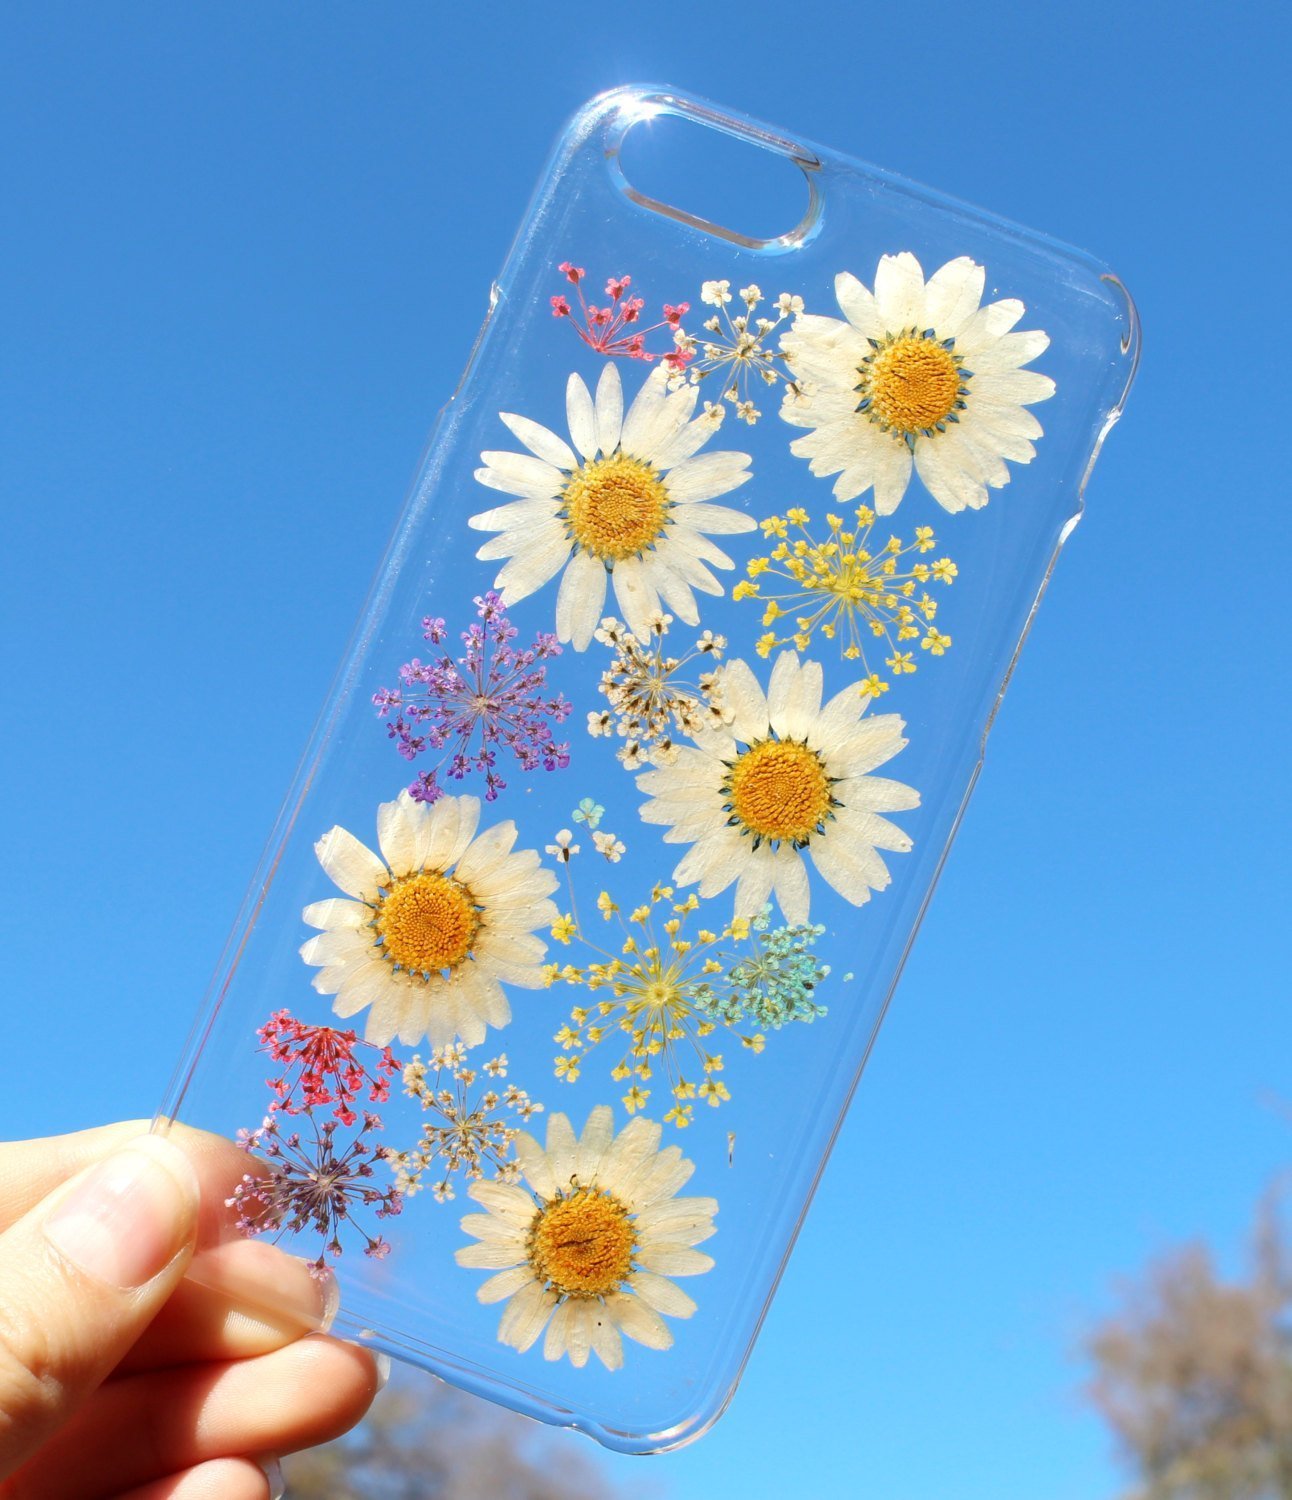 Fundas para el celular con flores reales para la primavera